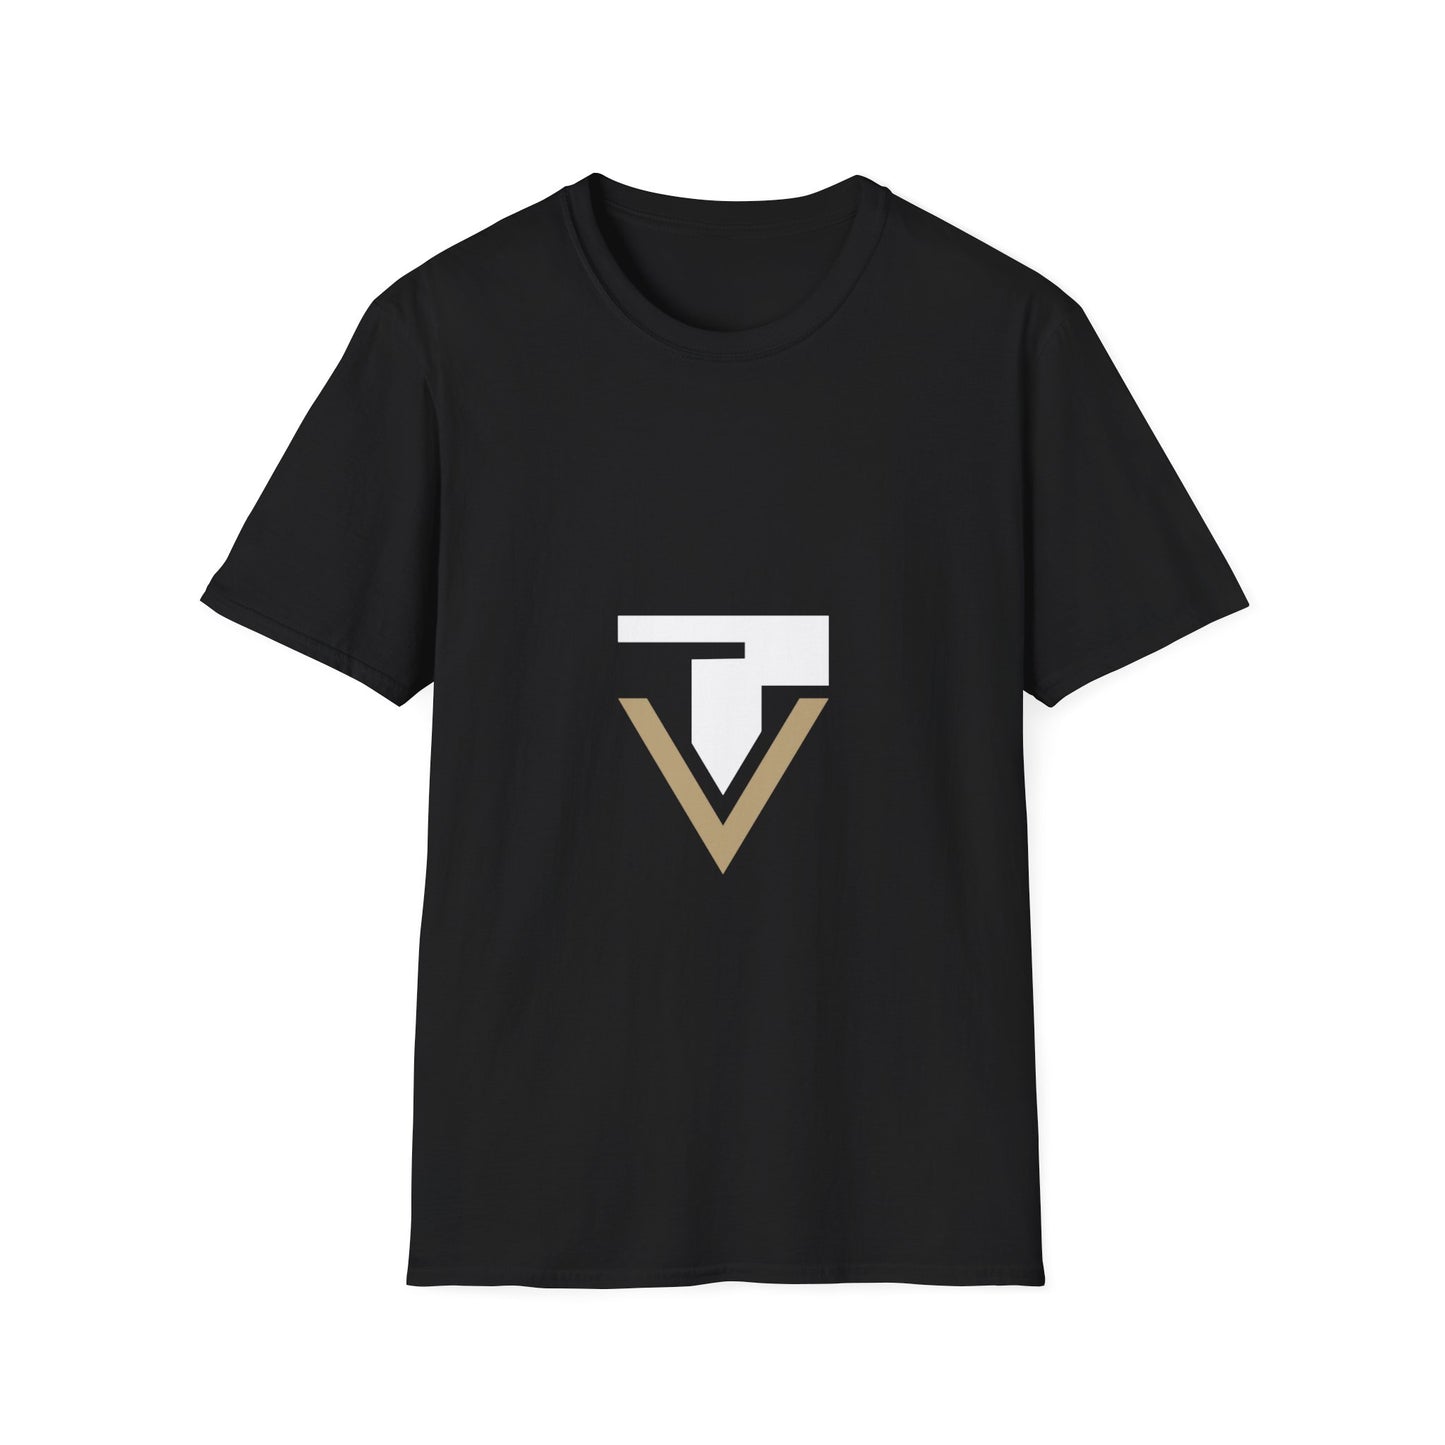 Unisex Soft Style TripleViking T-Shirt